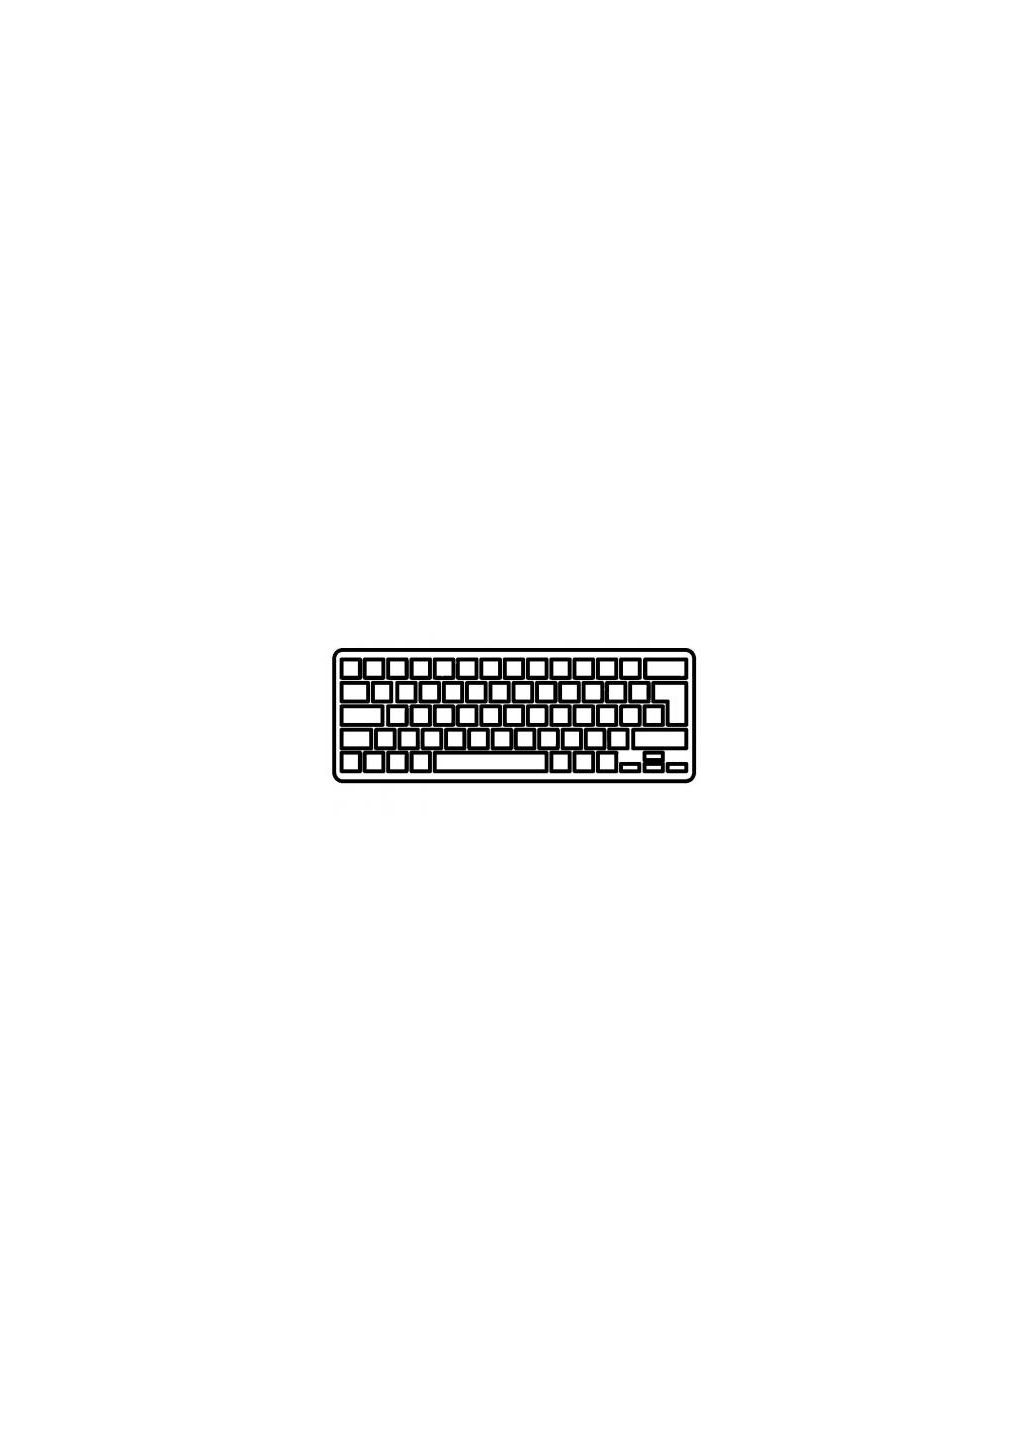 Клавиатура ноутбука Pavilion dv2/dv21000/dv2-1100 белая RU (A43289) HP pavilion dv2/dv2-1000/dv2-1100 белая ru (276707714)